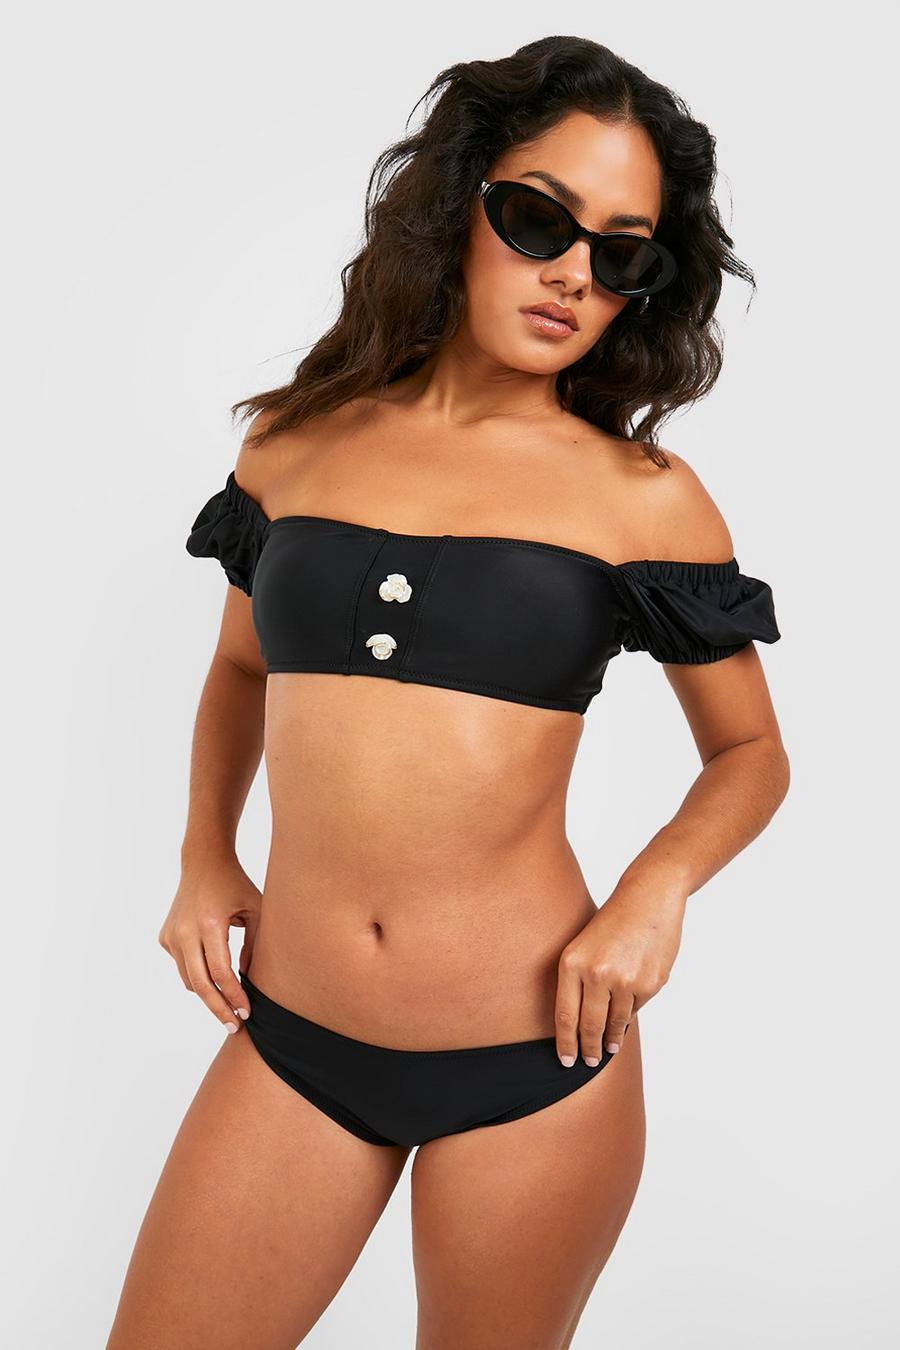 Black Gewatteerde Bikini Set Met Parel Detail En Korte Mouwen